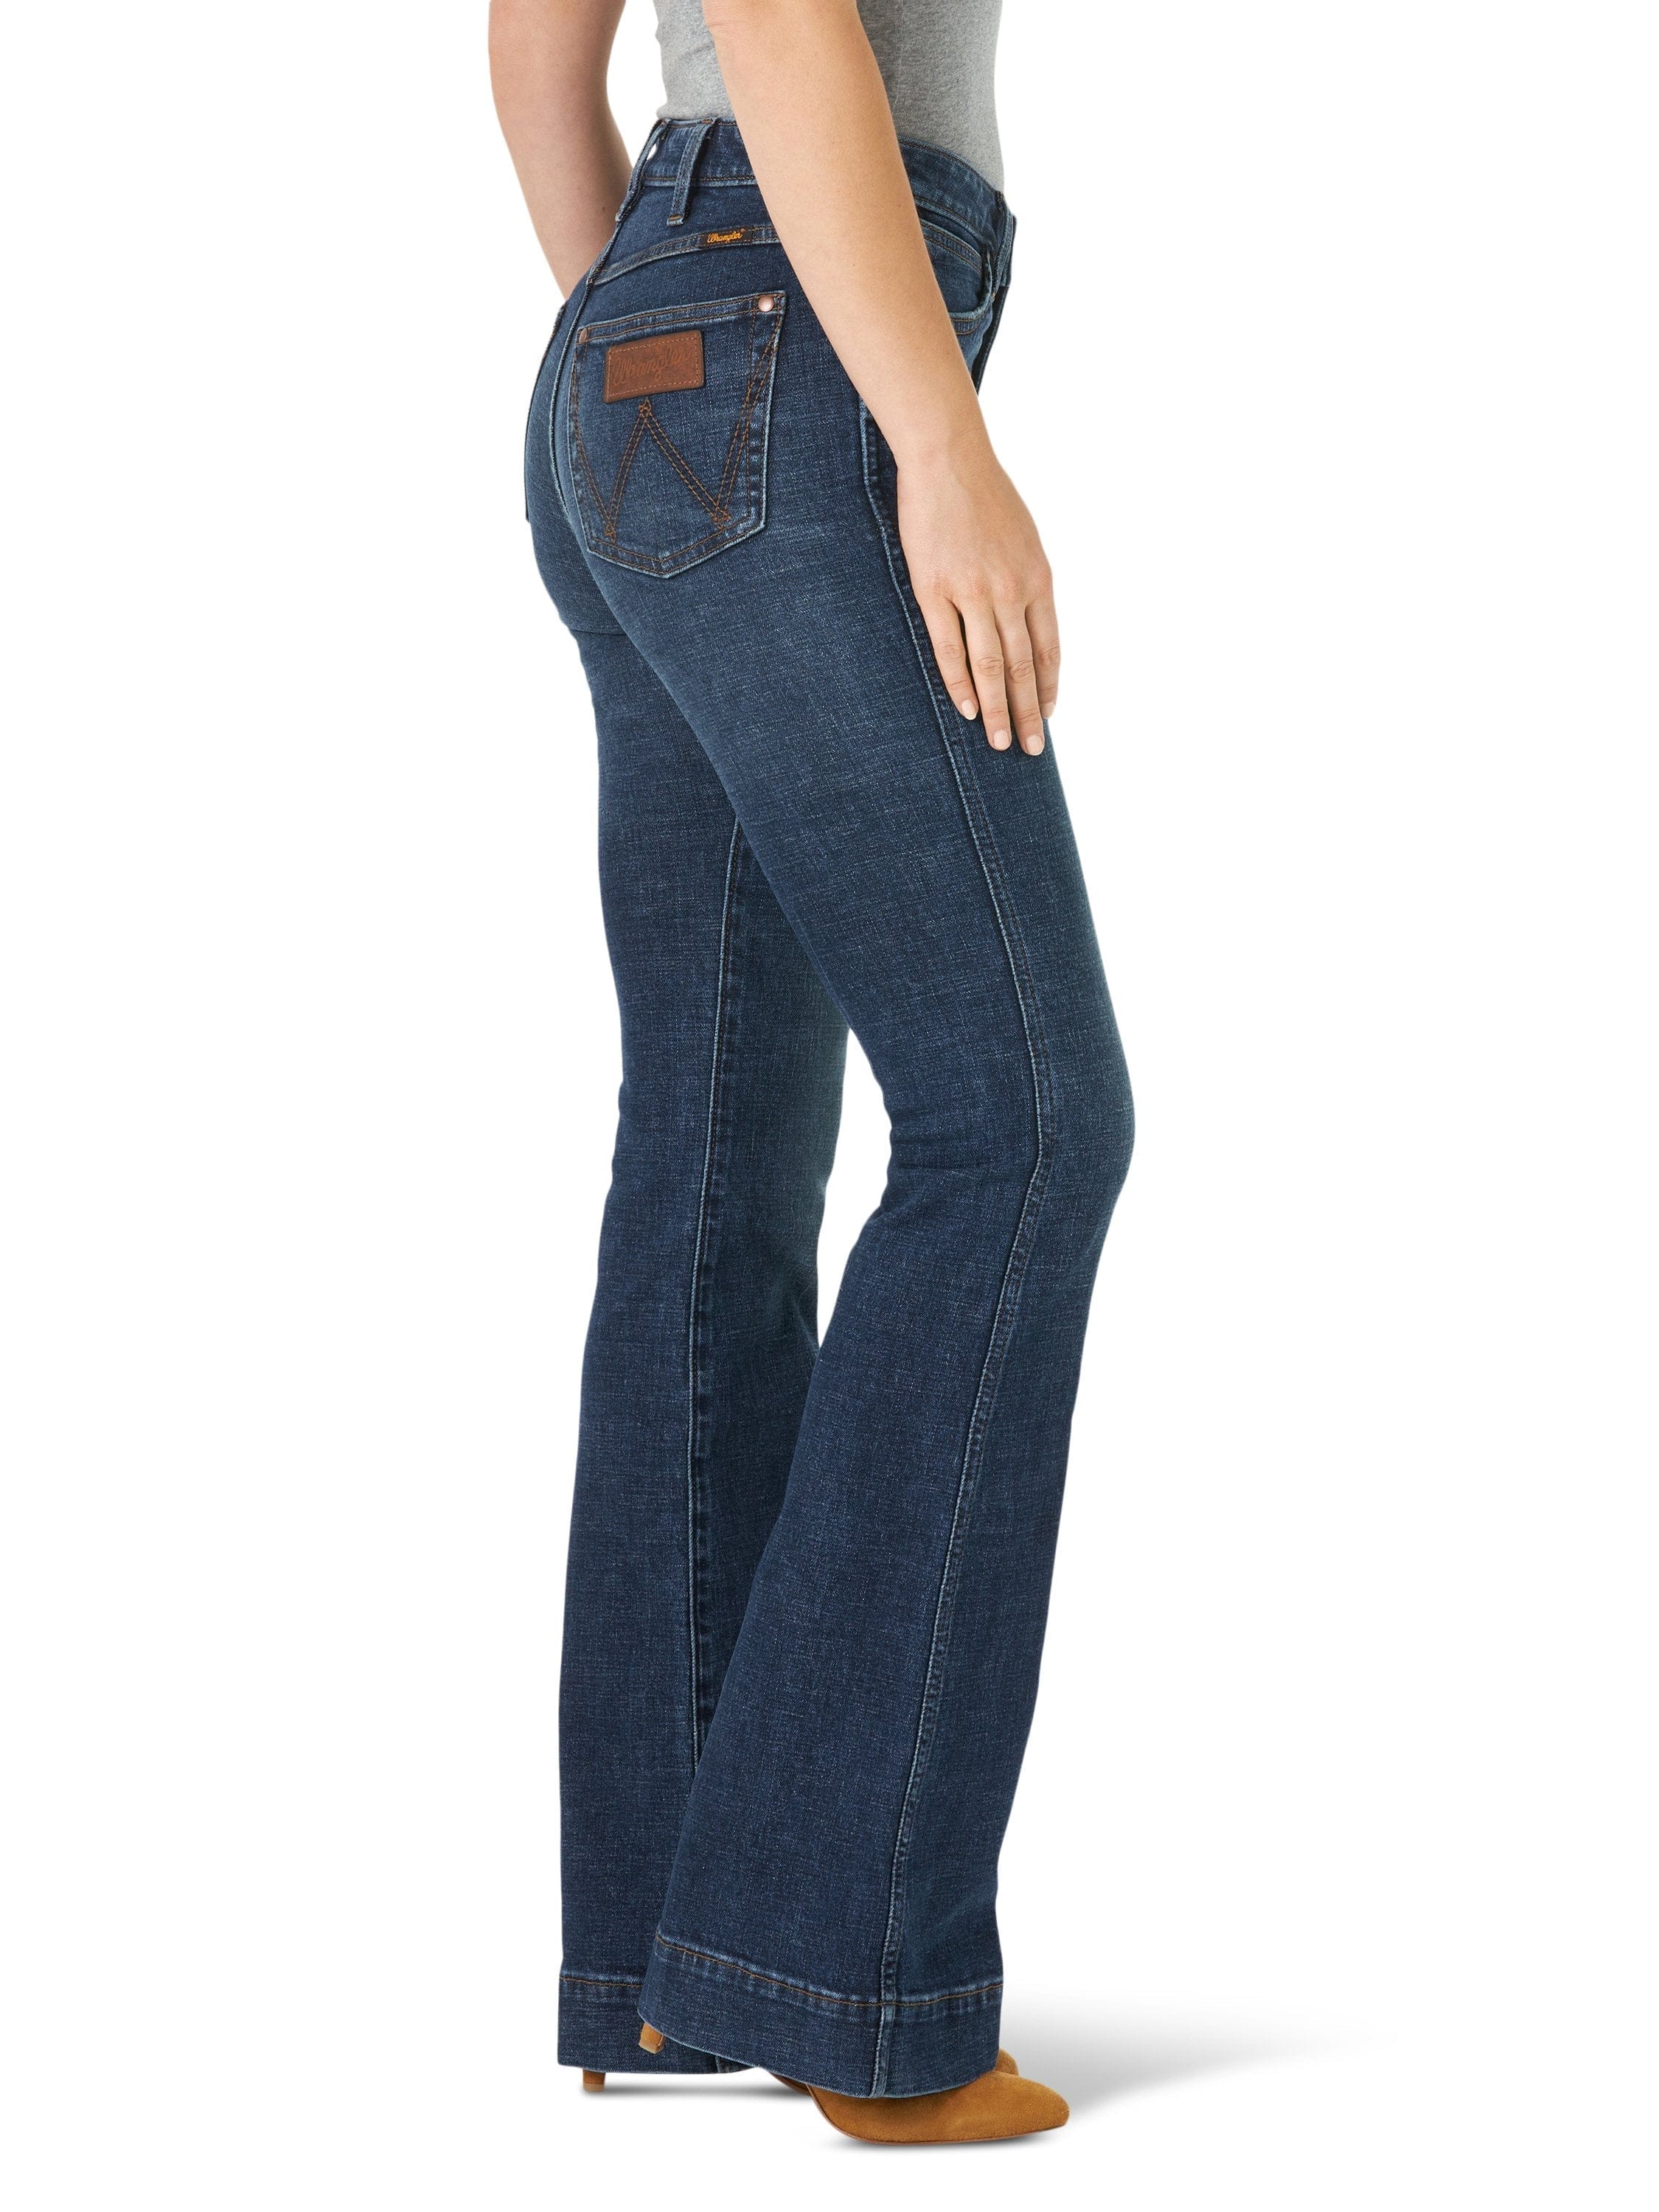 Rock  Roll Cowgirl Denim Trouser Jean Ladies Western Jeans